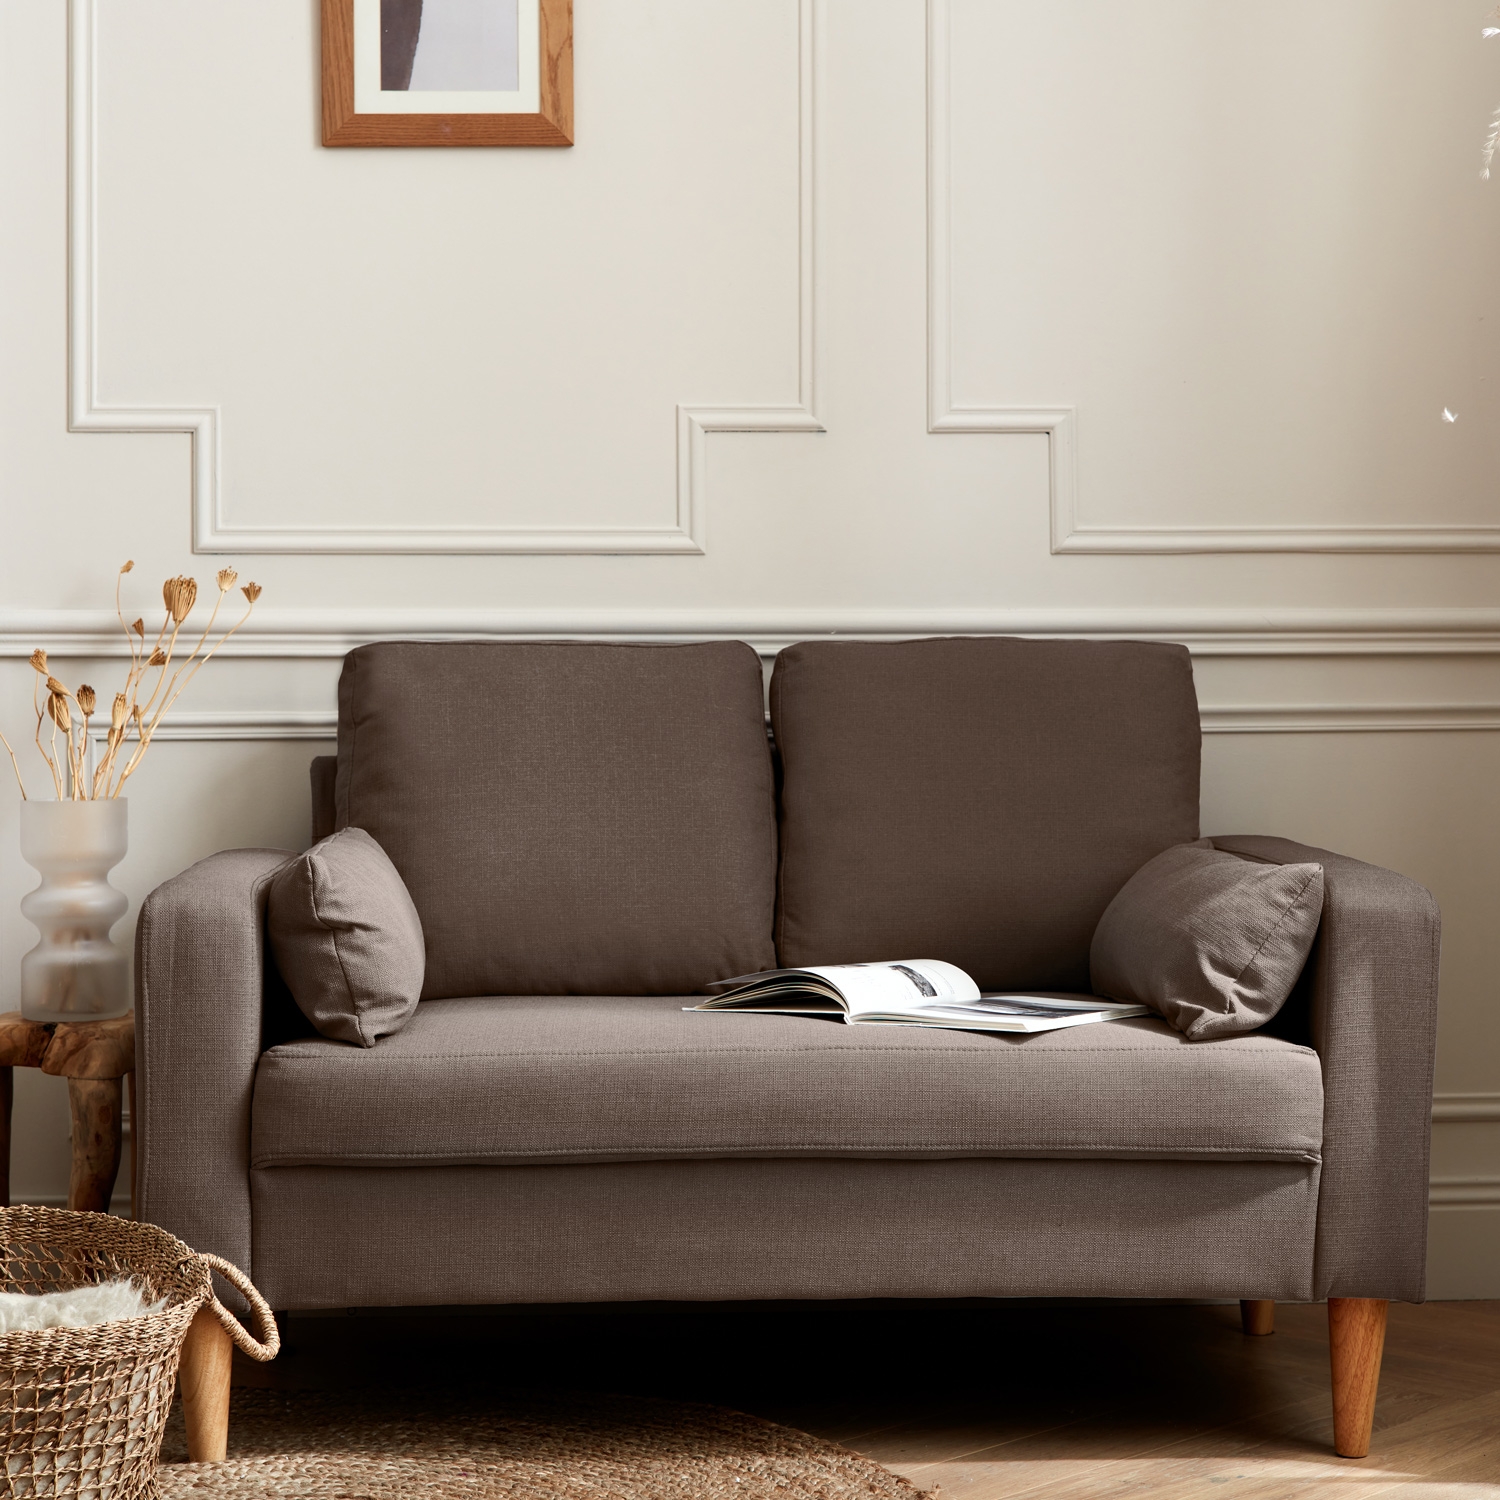 Canapé en tissu marron - bjorn - canapé 2 places fixe droit pieds bois. Style scandinave